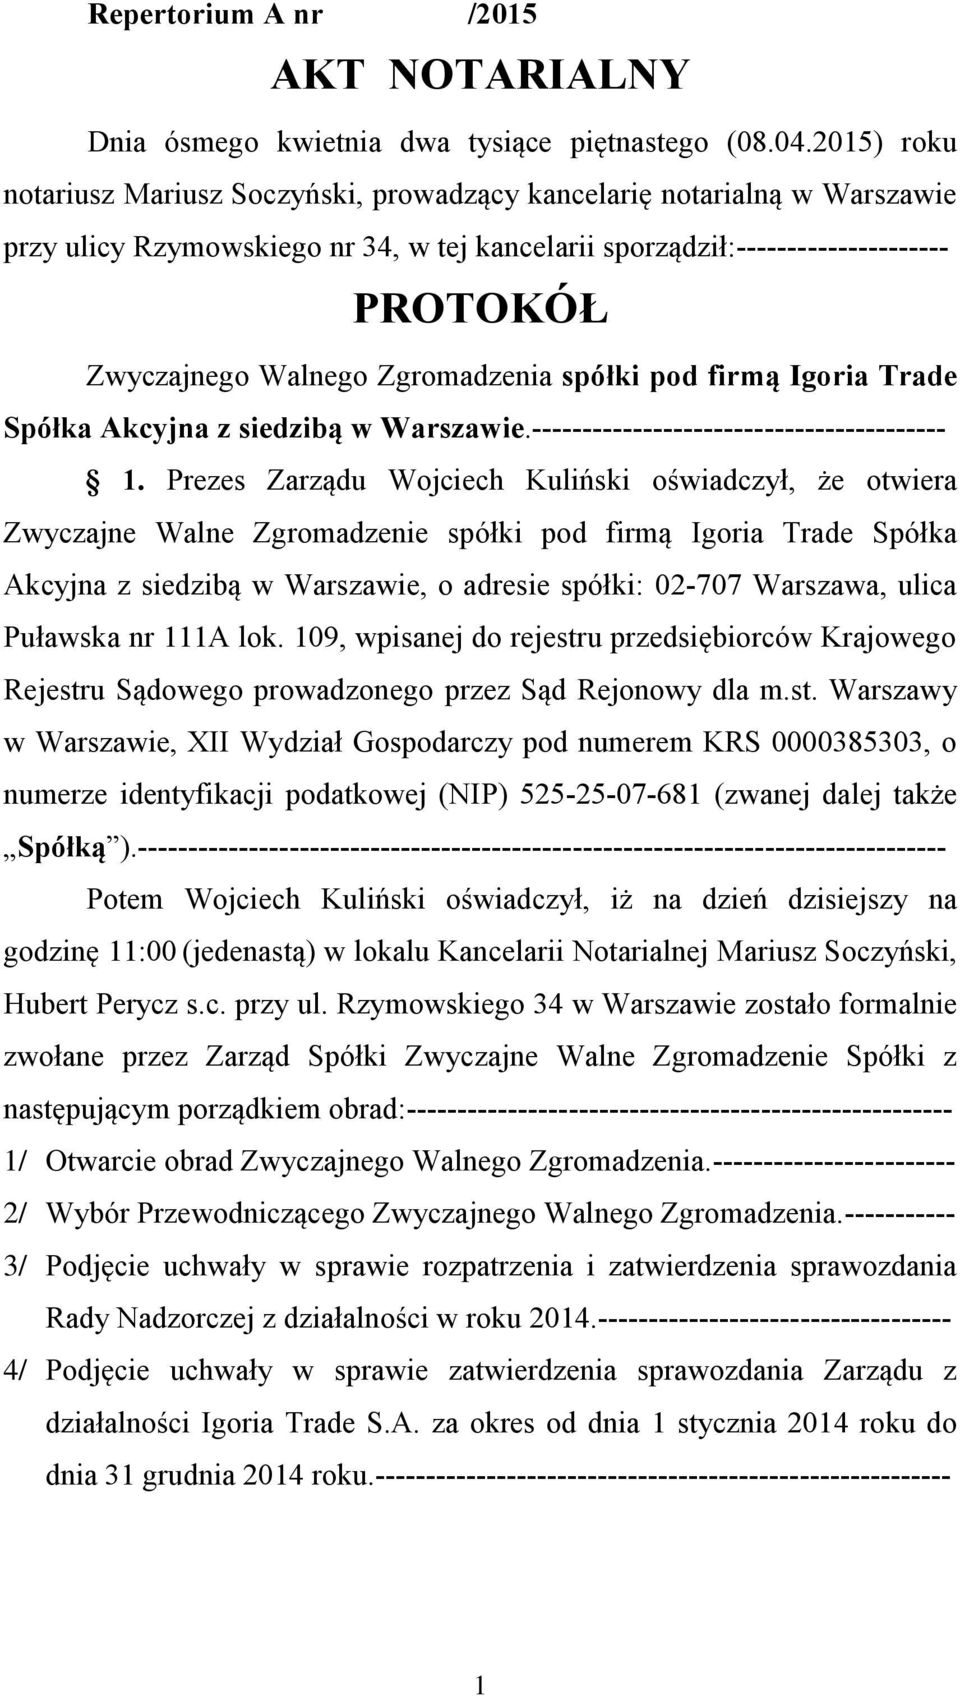 Trade Spółka Akcyjna z siedzibą w Warszawie.